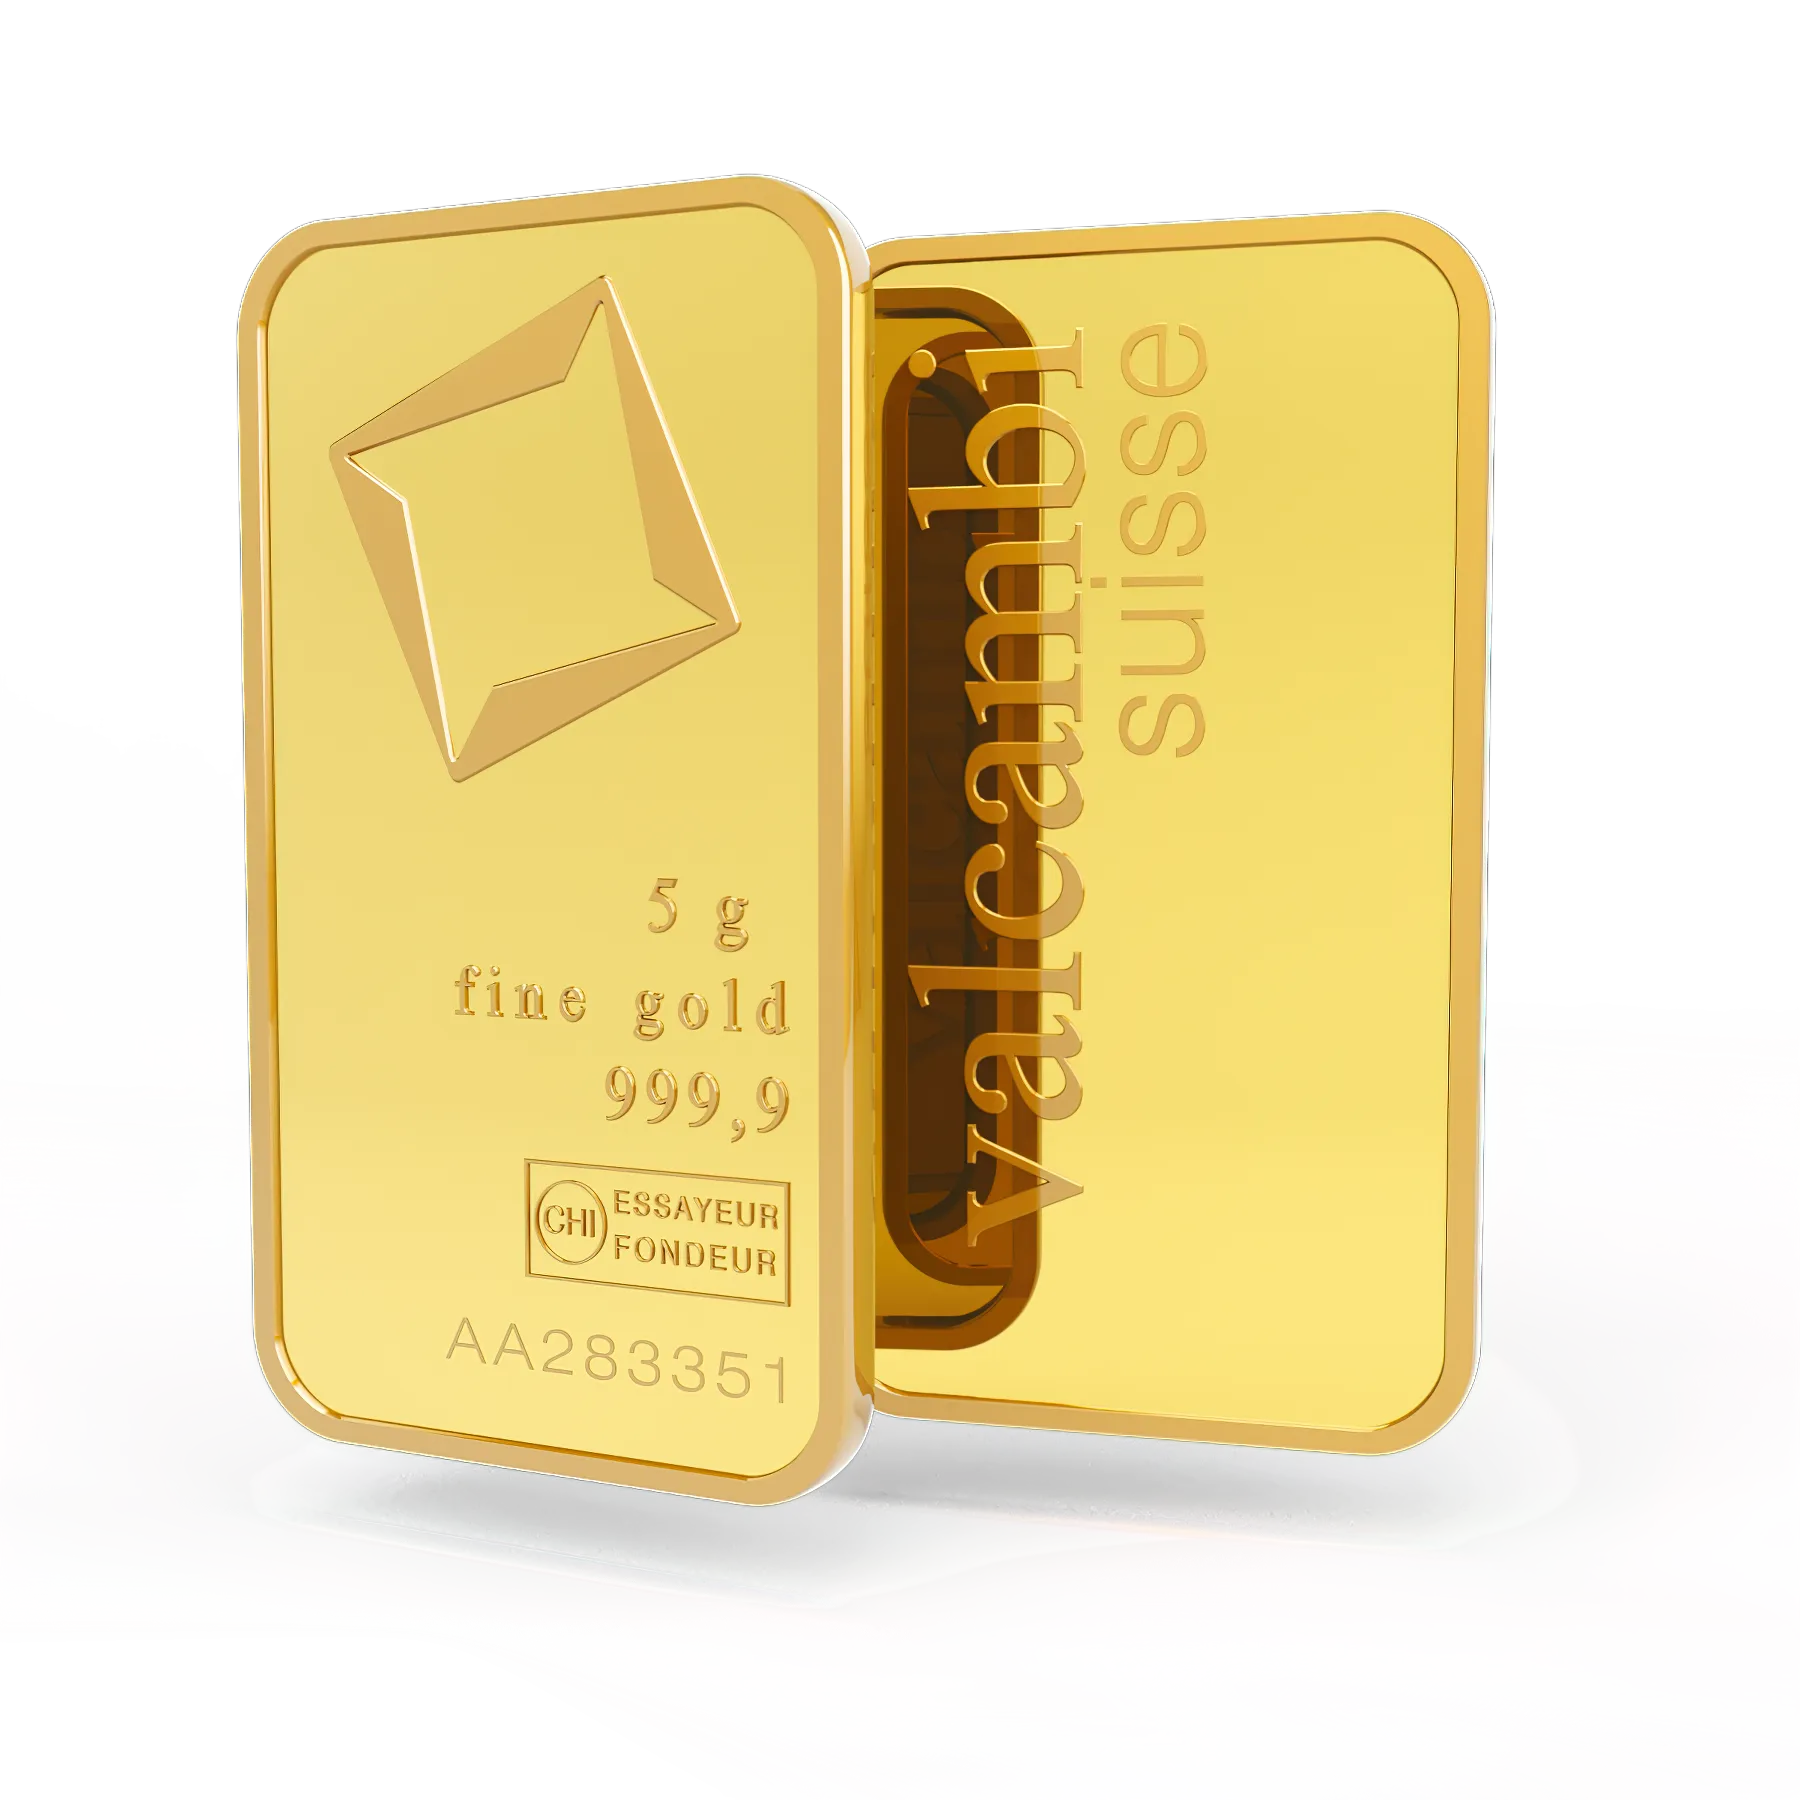 5g gold bar. Switzerland. Fine Gold 999.9